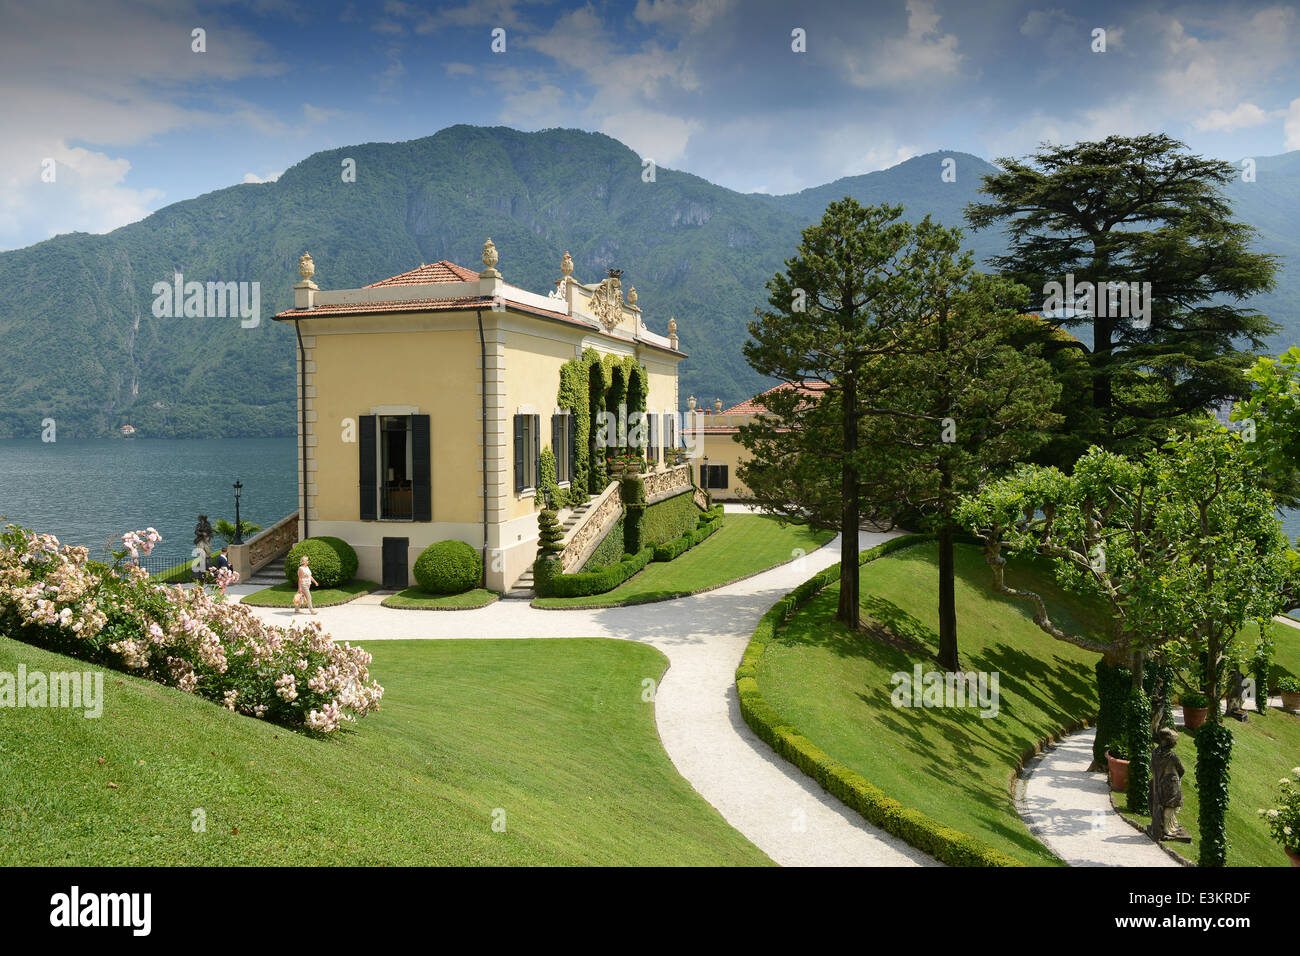 Villa Balbianello giardini giardino, Lenno, Lago di Como, Italia Foto Stock